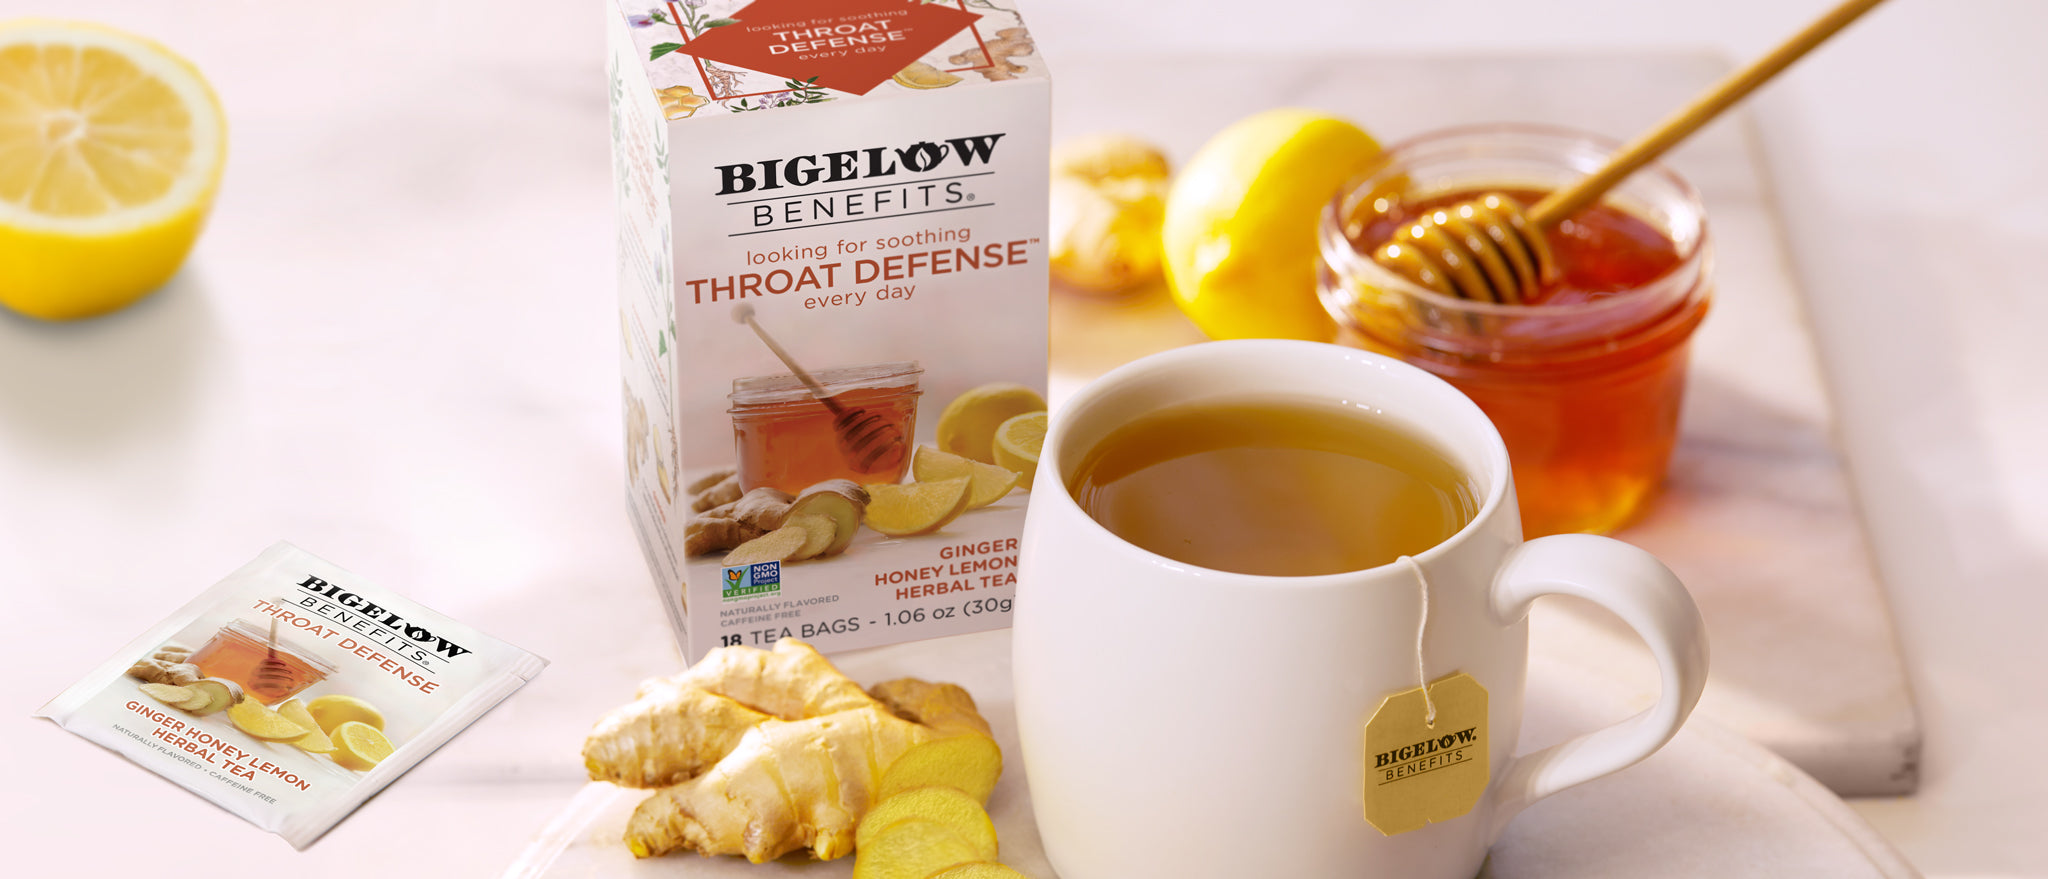 Bigelow Benefits  THROAT DEFENSE Ginger Honey Lemon Herbal Tea